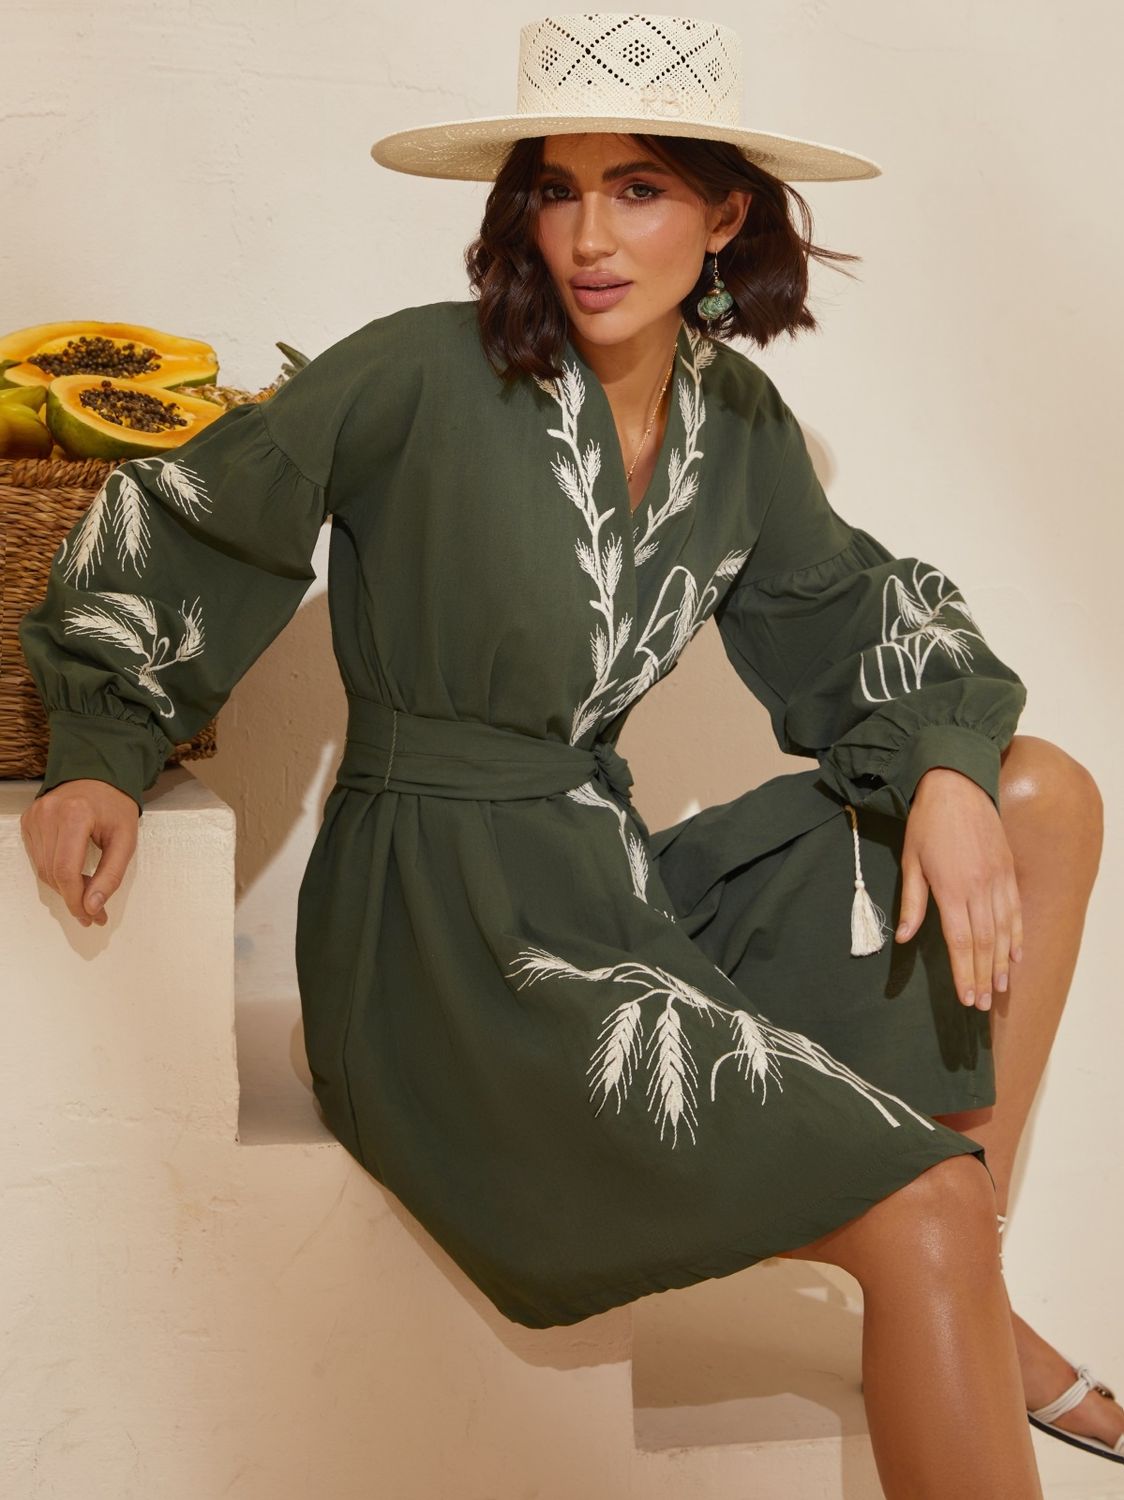 Сукня з вишивкою в етнічному стилі кольору хакі - фото